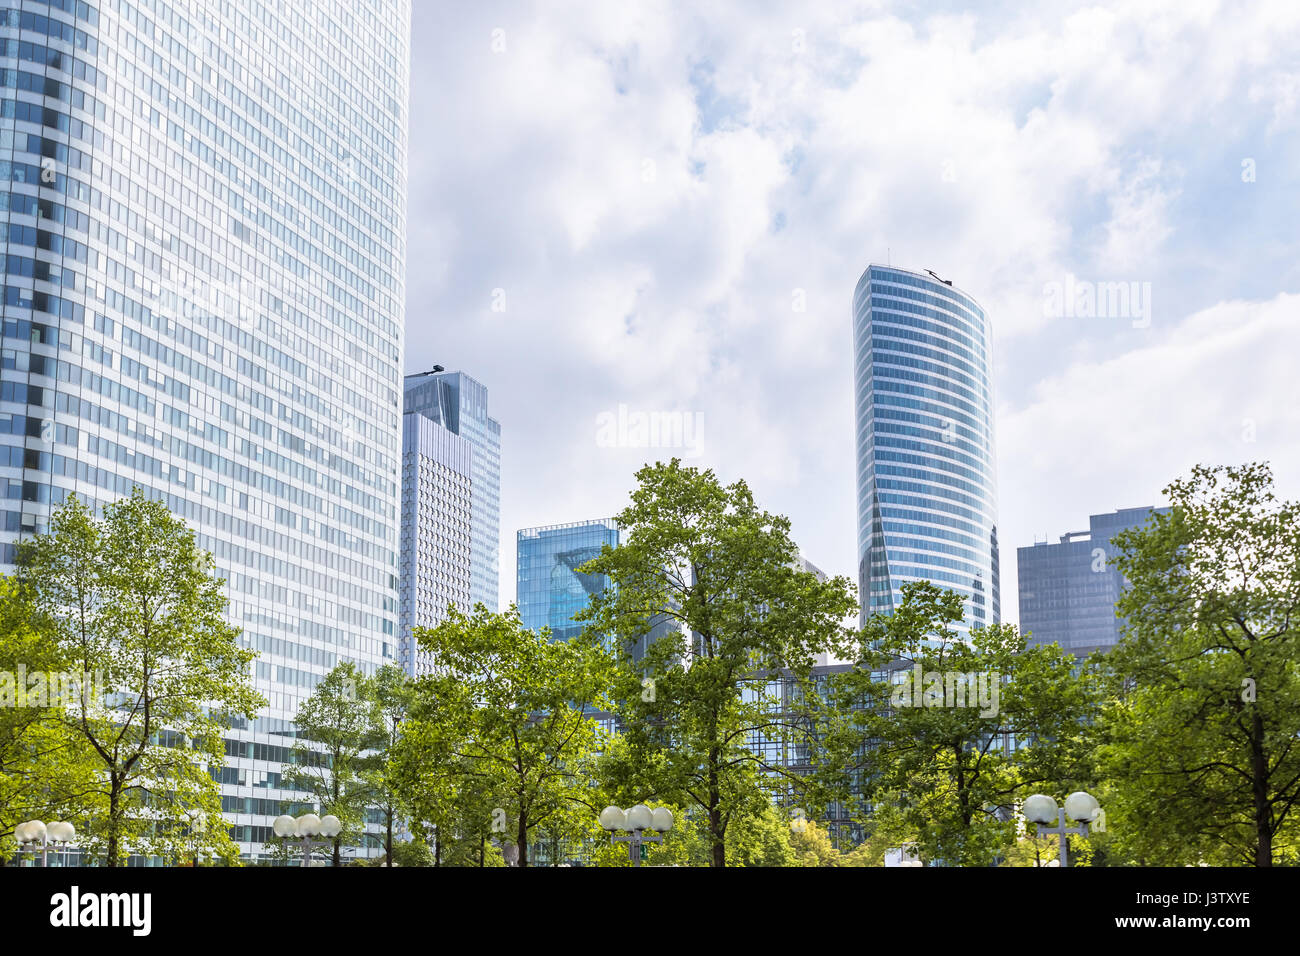 Moderno distrito de negocios y el centro financiero con el verde de los árboles y follaje y rascacielos con fachada de vidrio, el muelle en La Defense, París Foto de stock